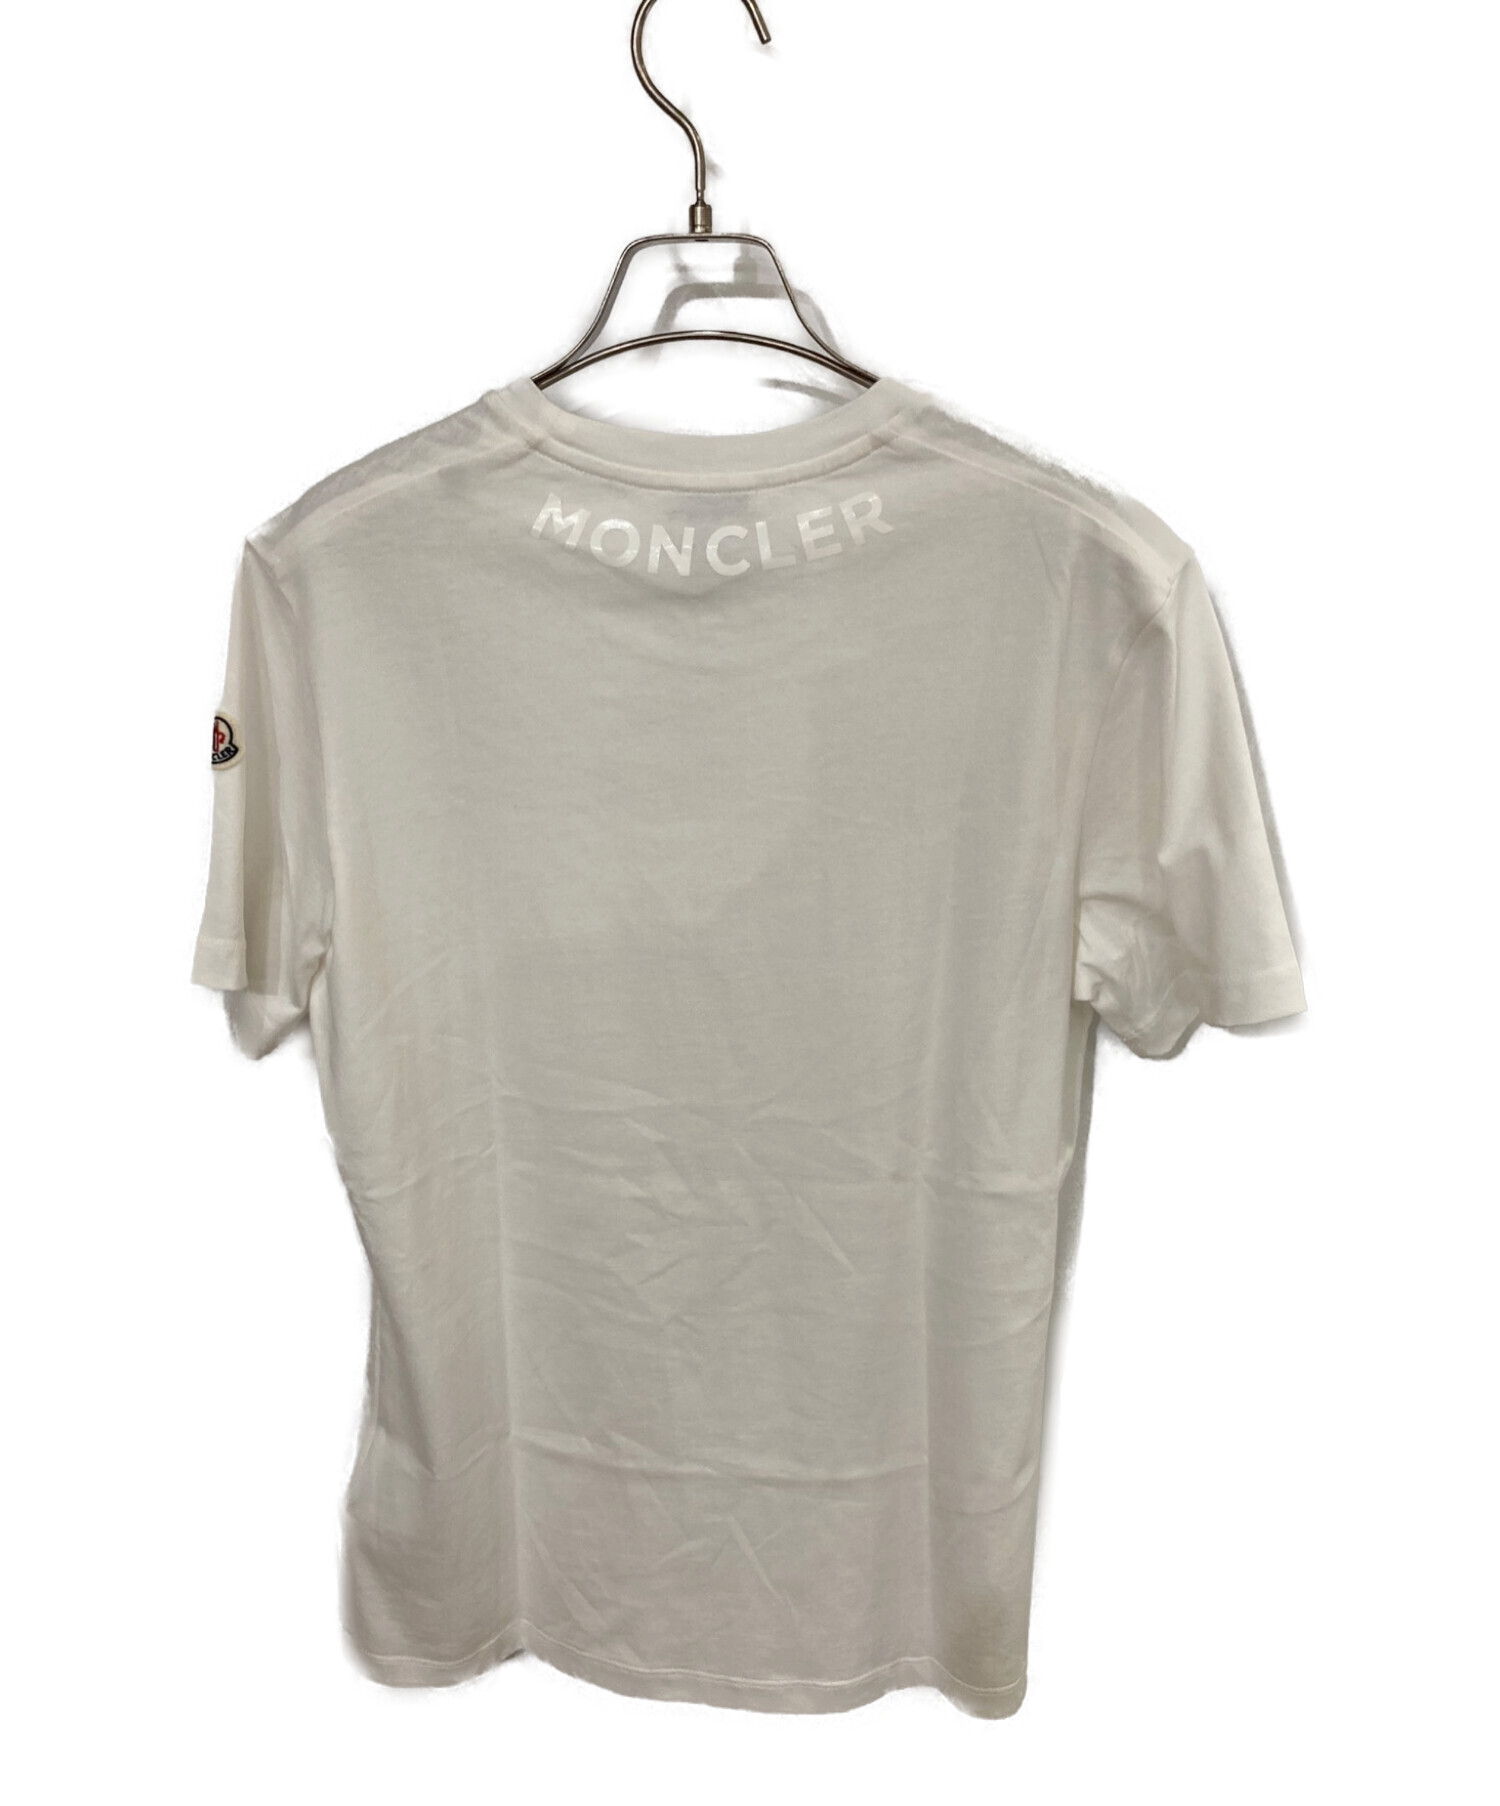 MONCLER (モンクレール) Tシャツ ホワイト サイズ:s 未使用品